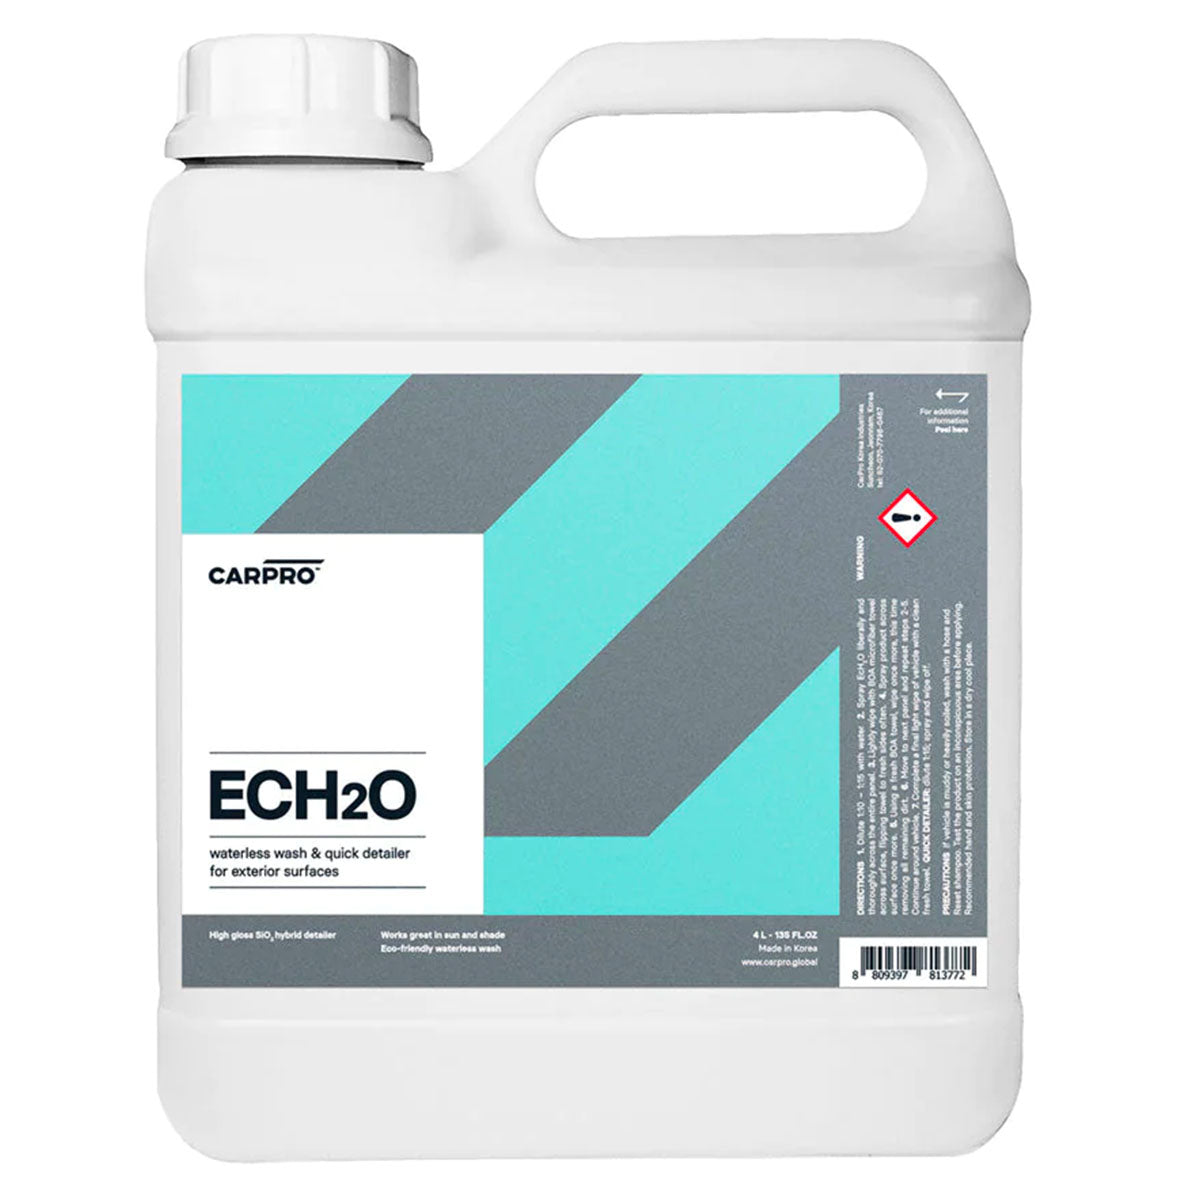 Carpro ECH2O